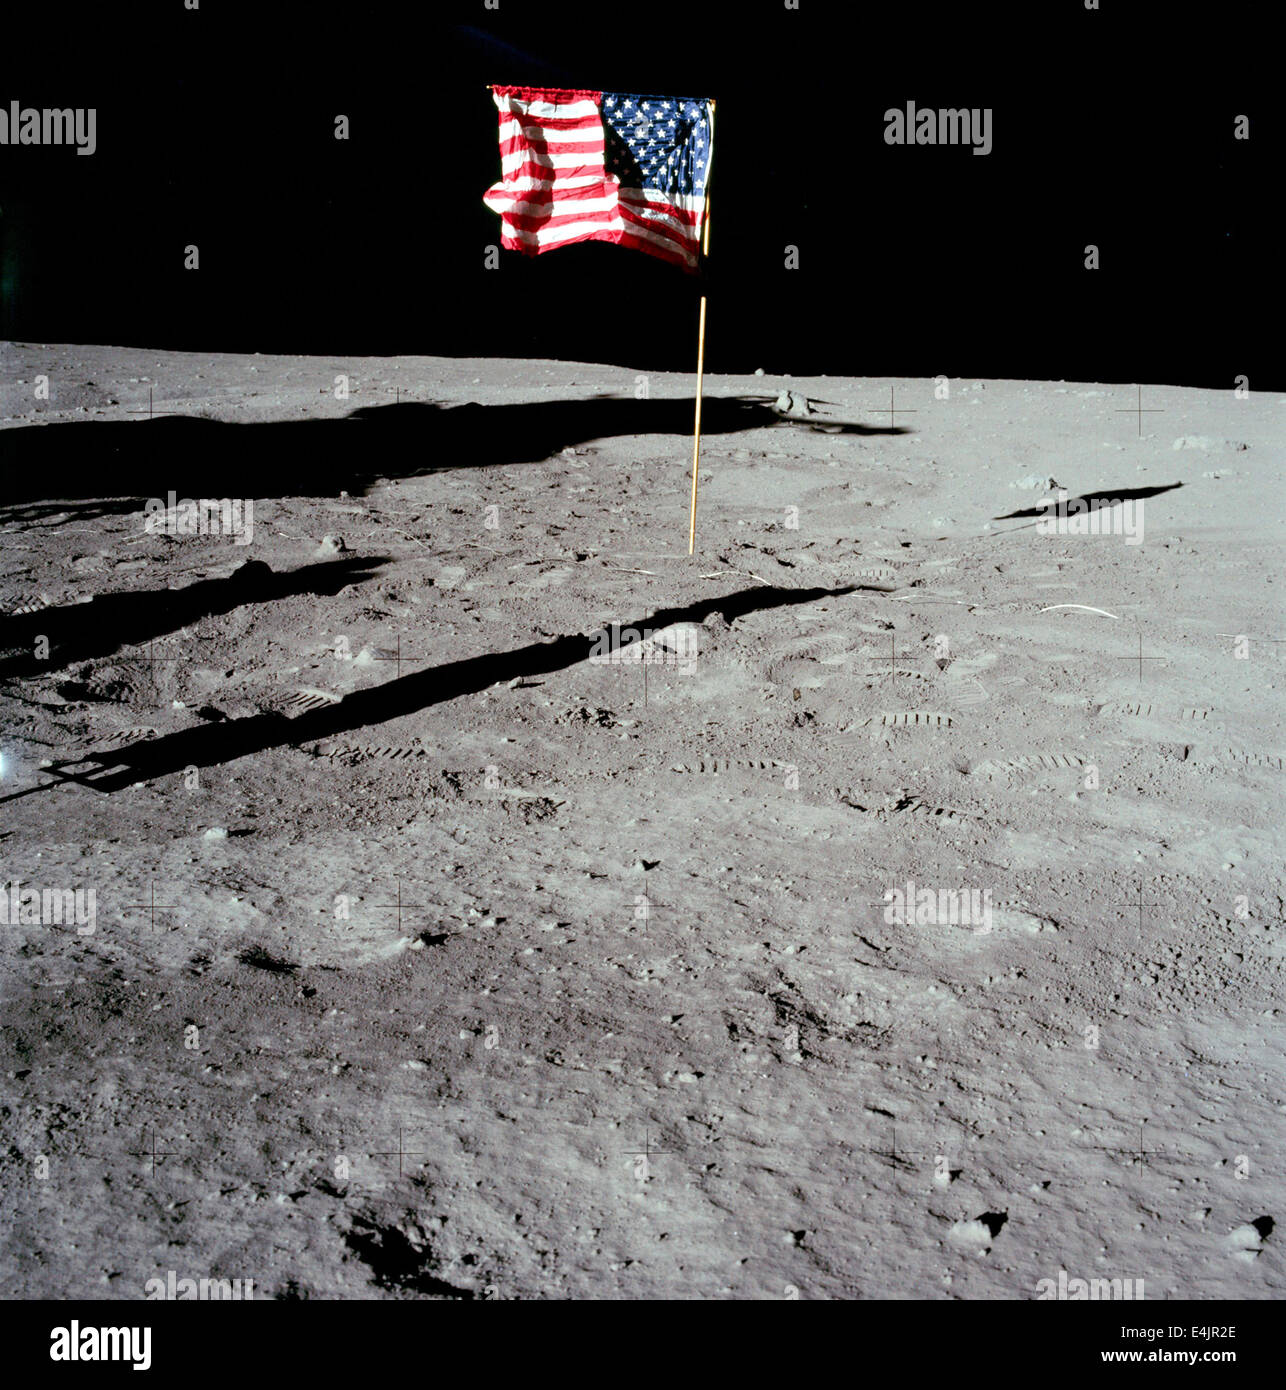 La bandera americana Apolo 11 en la superficie lunar Foto de stock